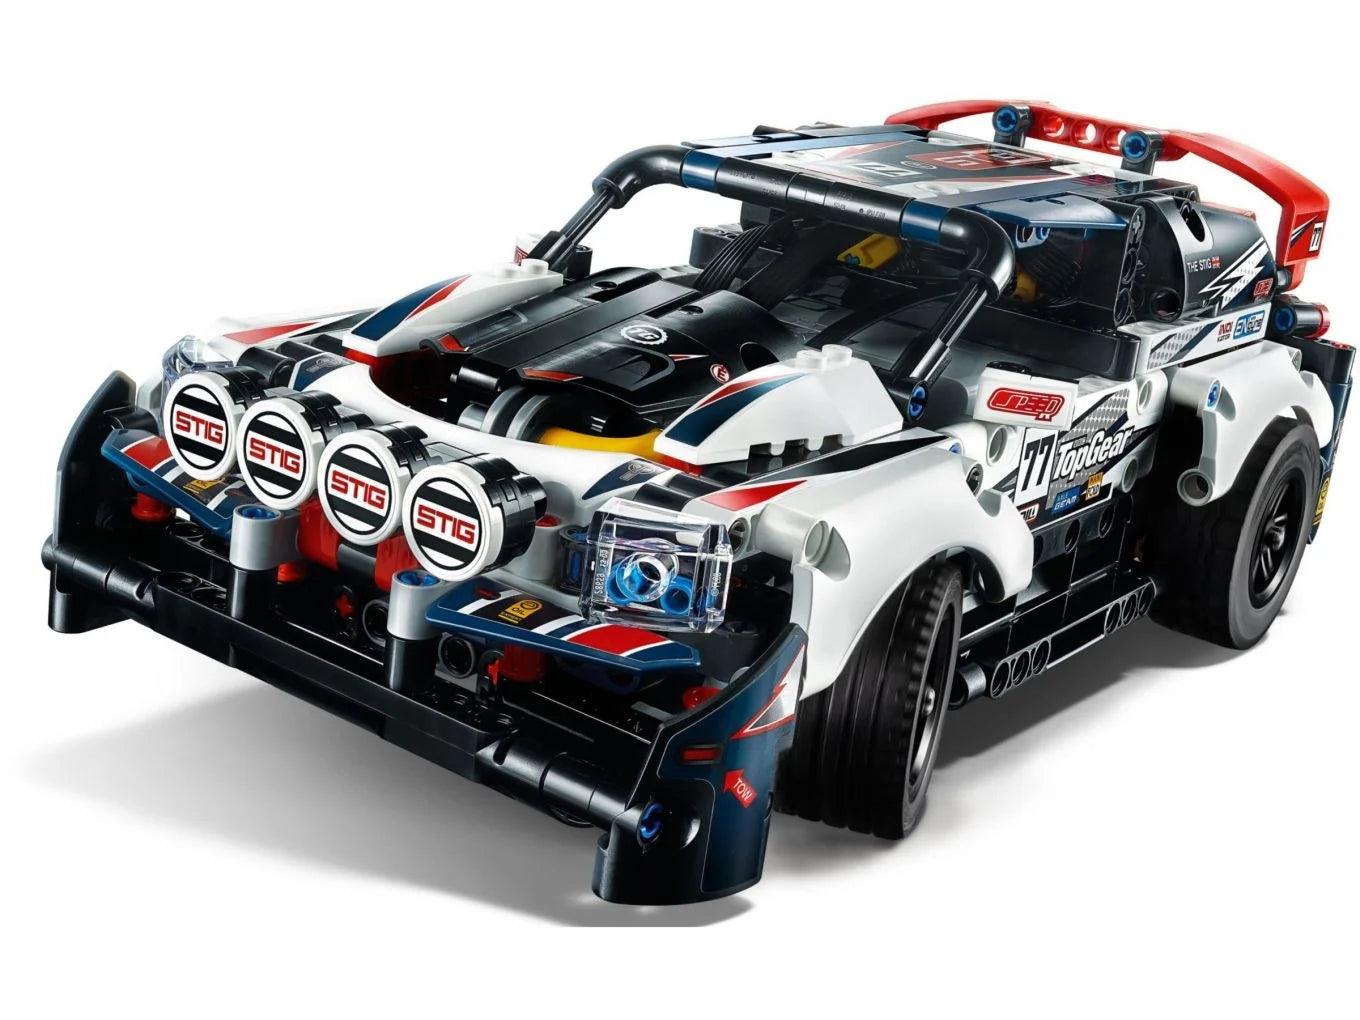 LEGO Top Gear Rally Auto 42109 Technic | 2TTOYS ✓ Official shop<br>